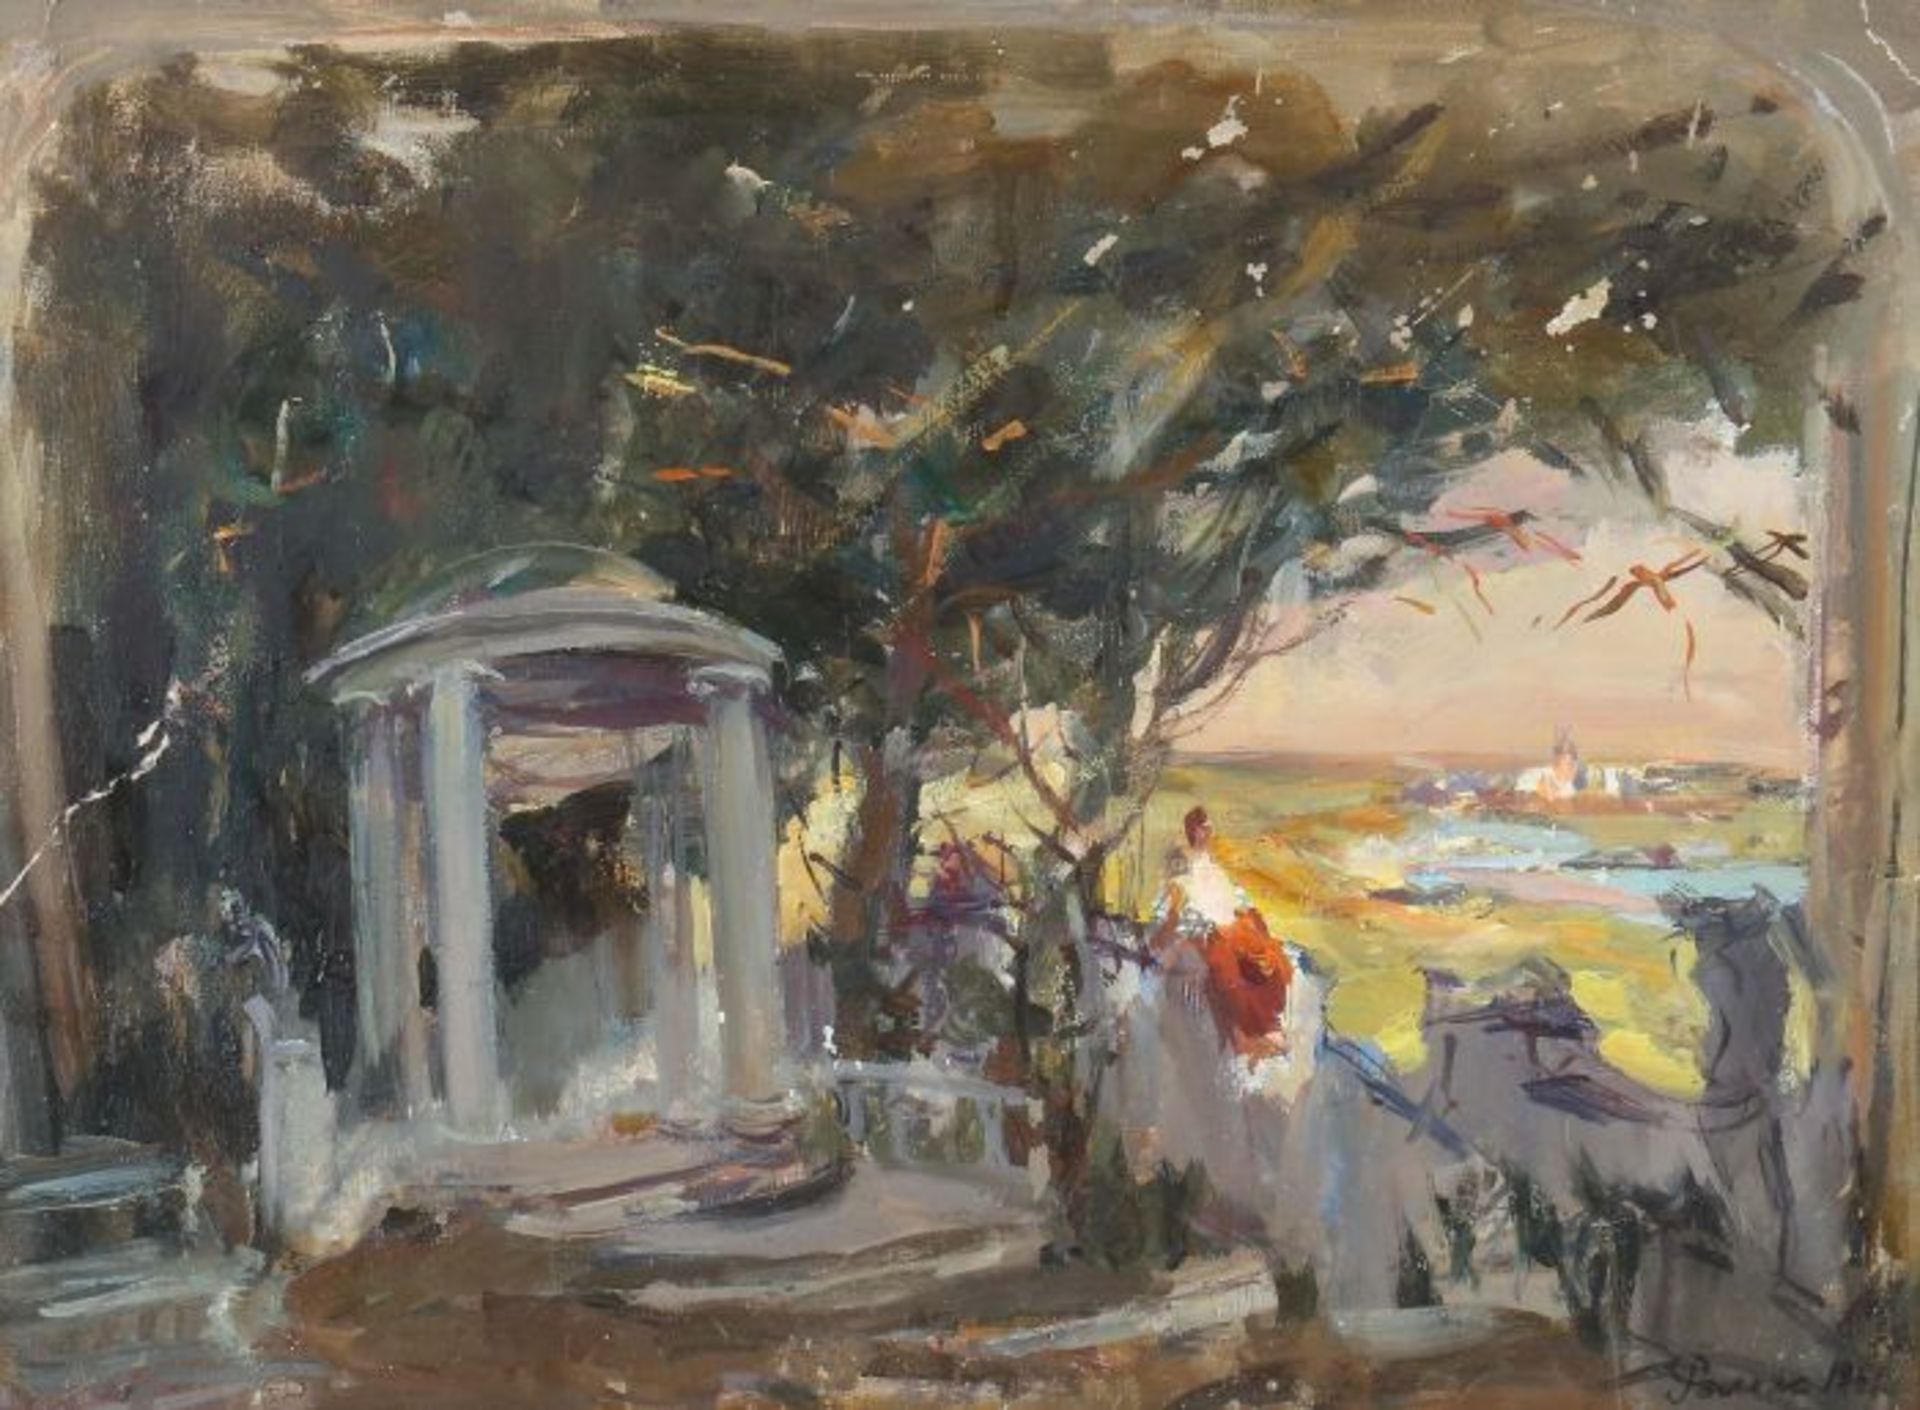 Romas, Jakov Dorofeevic 1902 - 1969. "Pavillon im Park", Landschaftsstudie mit einer auf die Stadt